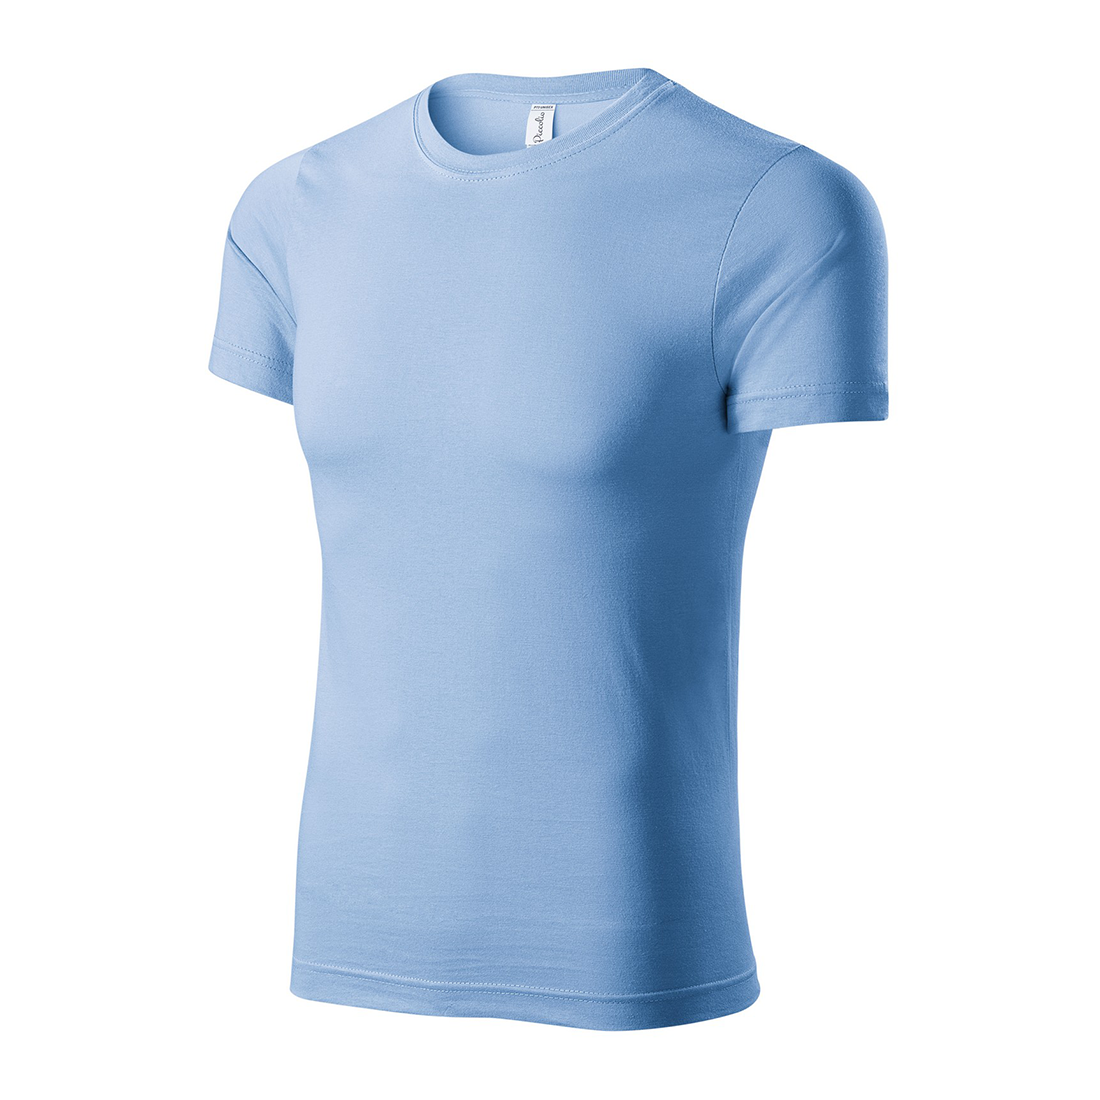 100% Cotton Unisex T-shirt - Safetywear